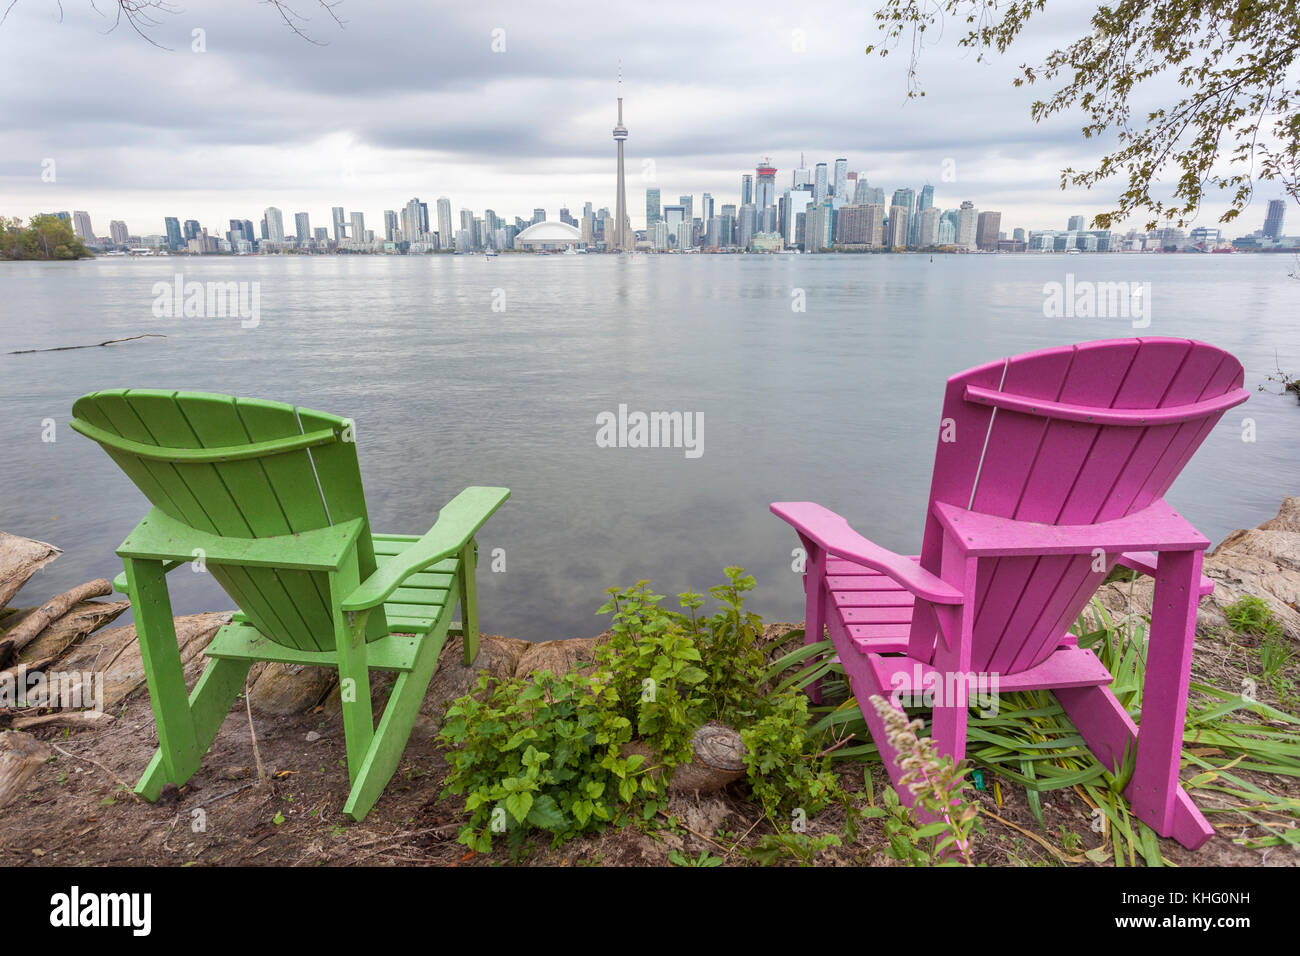 Chaises colorées avec incroyable vue sur l'horizon au centre de l'île de Toronto, province de l'Ontario, canada Banque D'Images